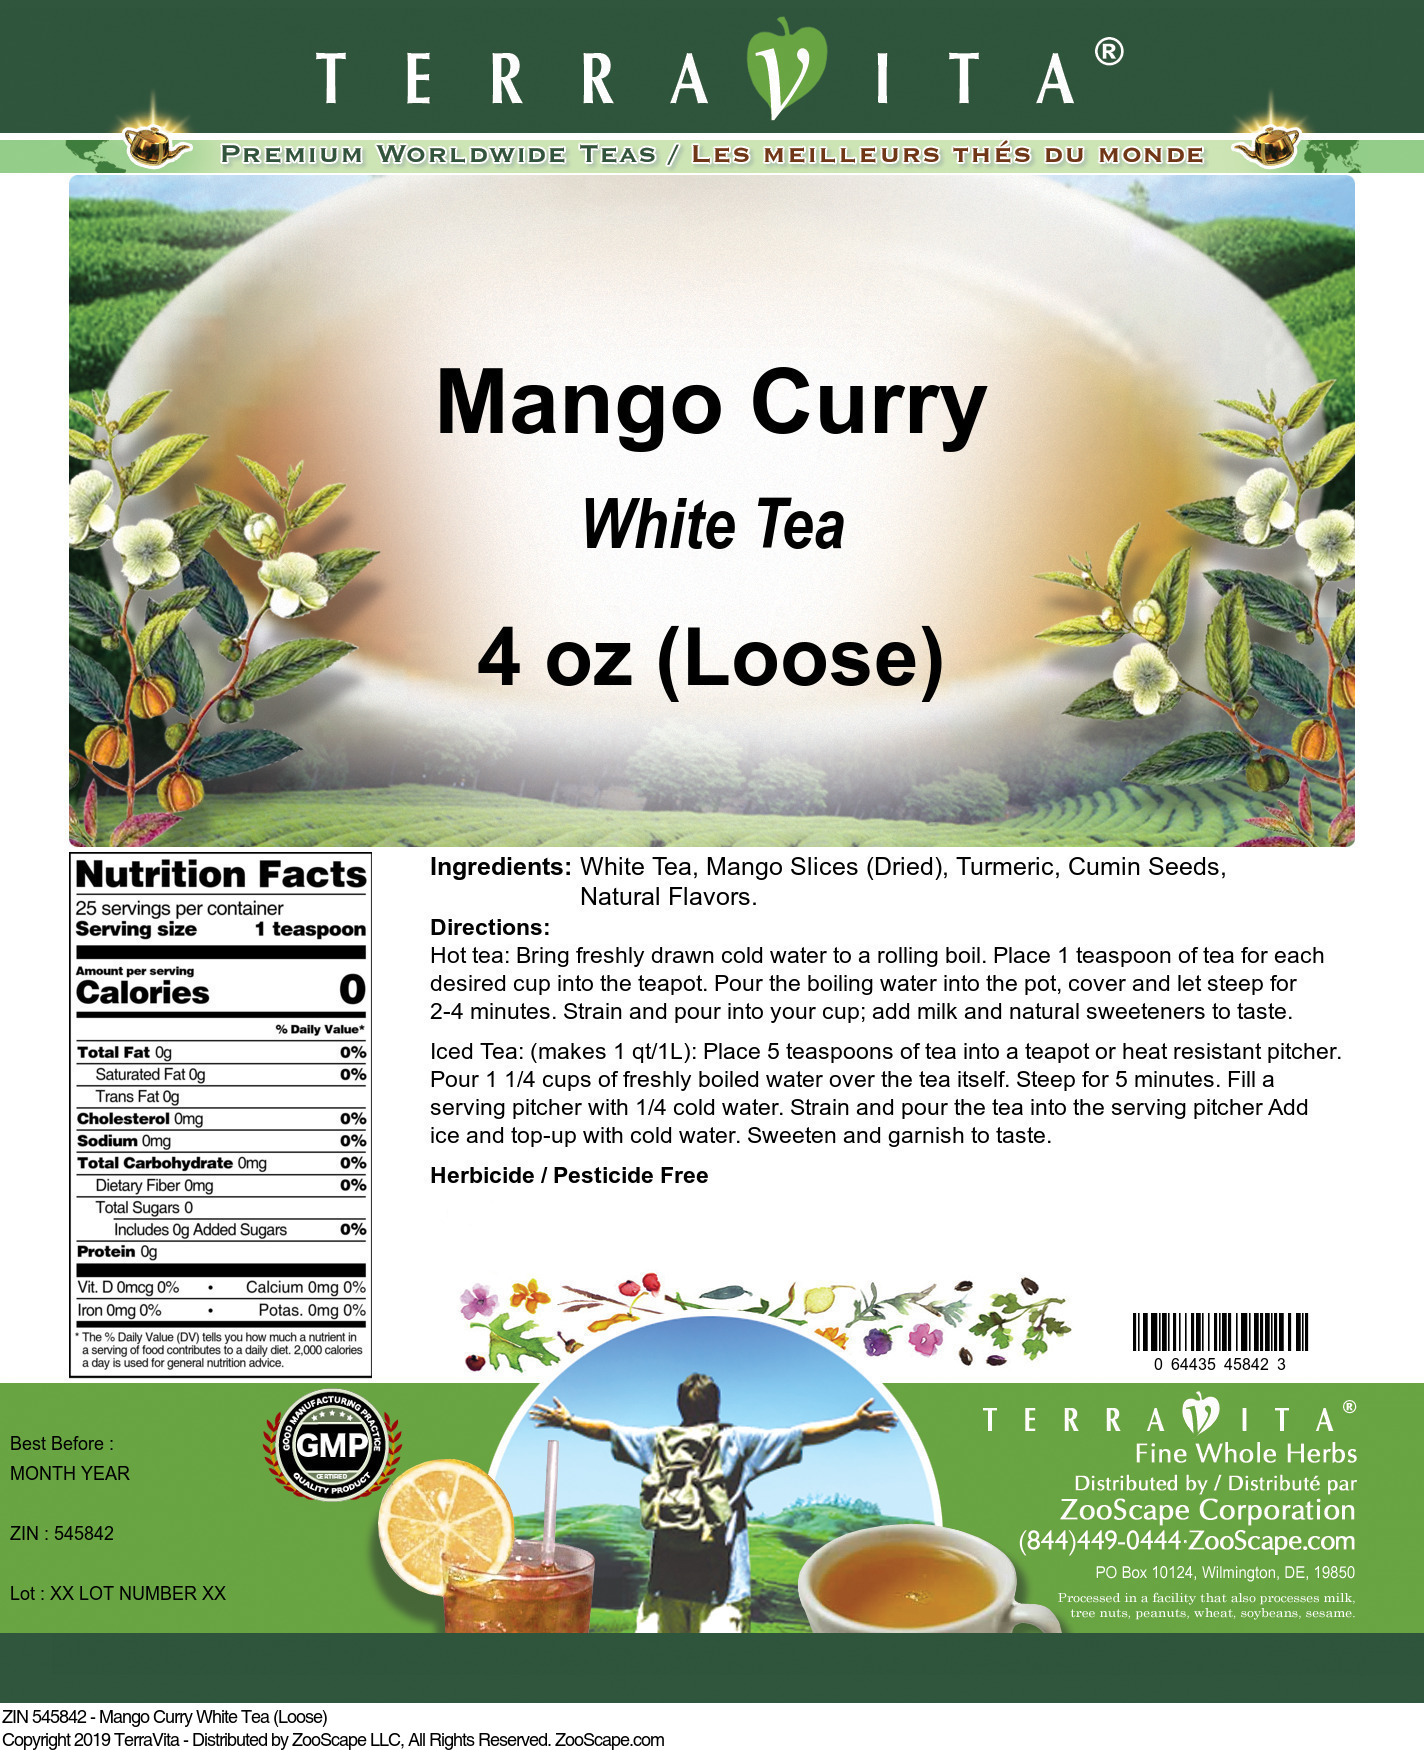 Mango Curry White Tea (Loose) - Label